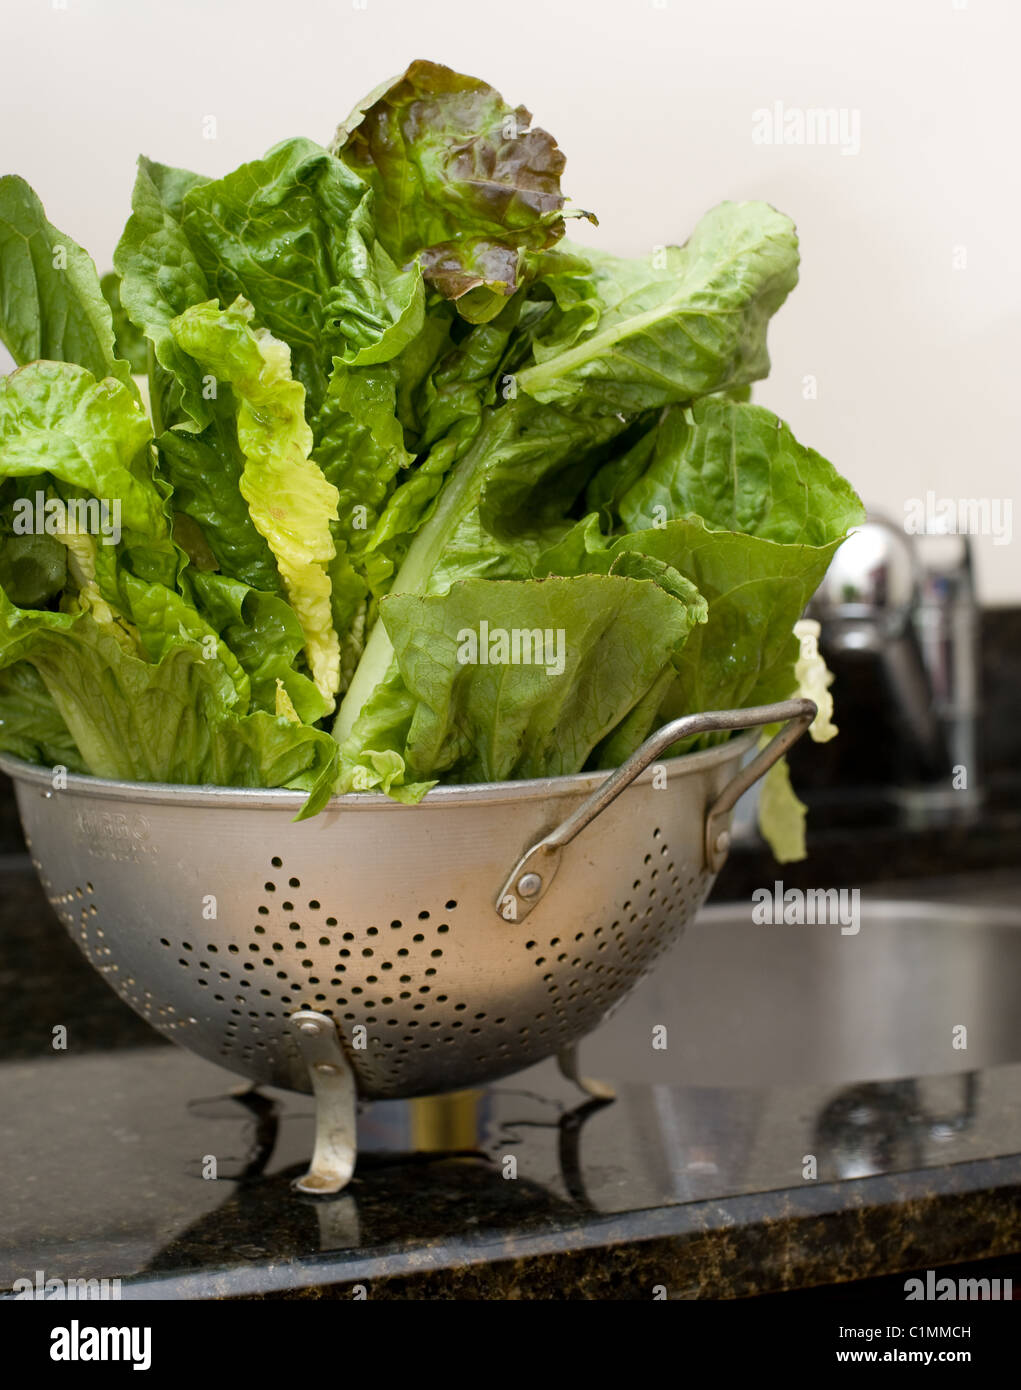 Fresh washed lettuce Stock Photo